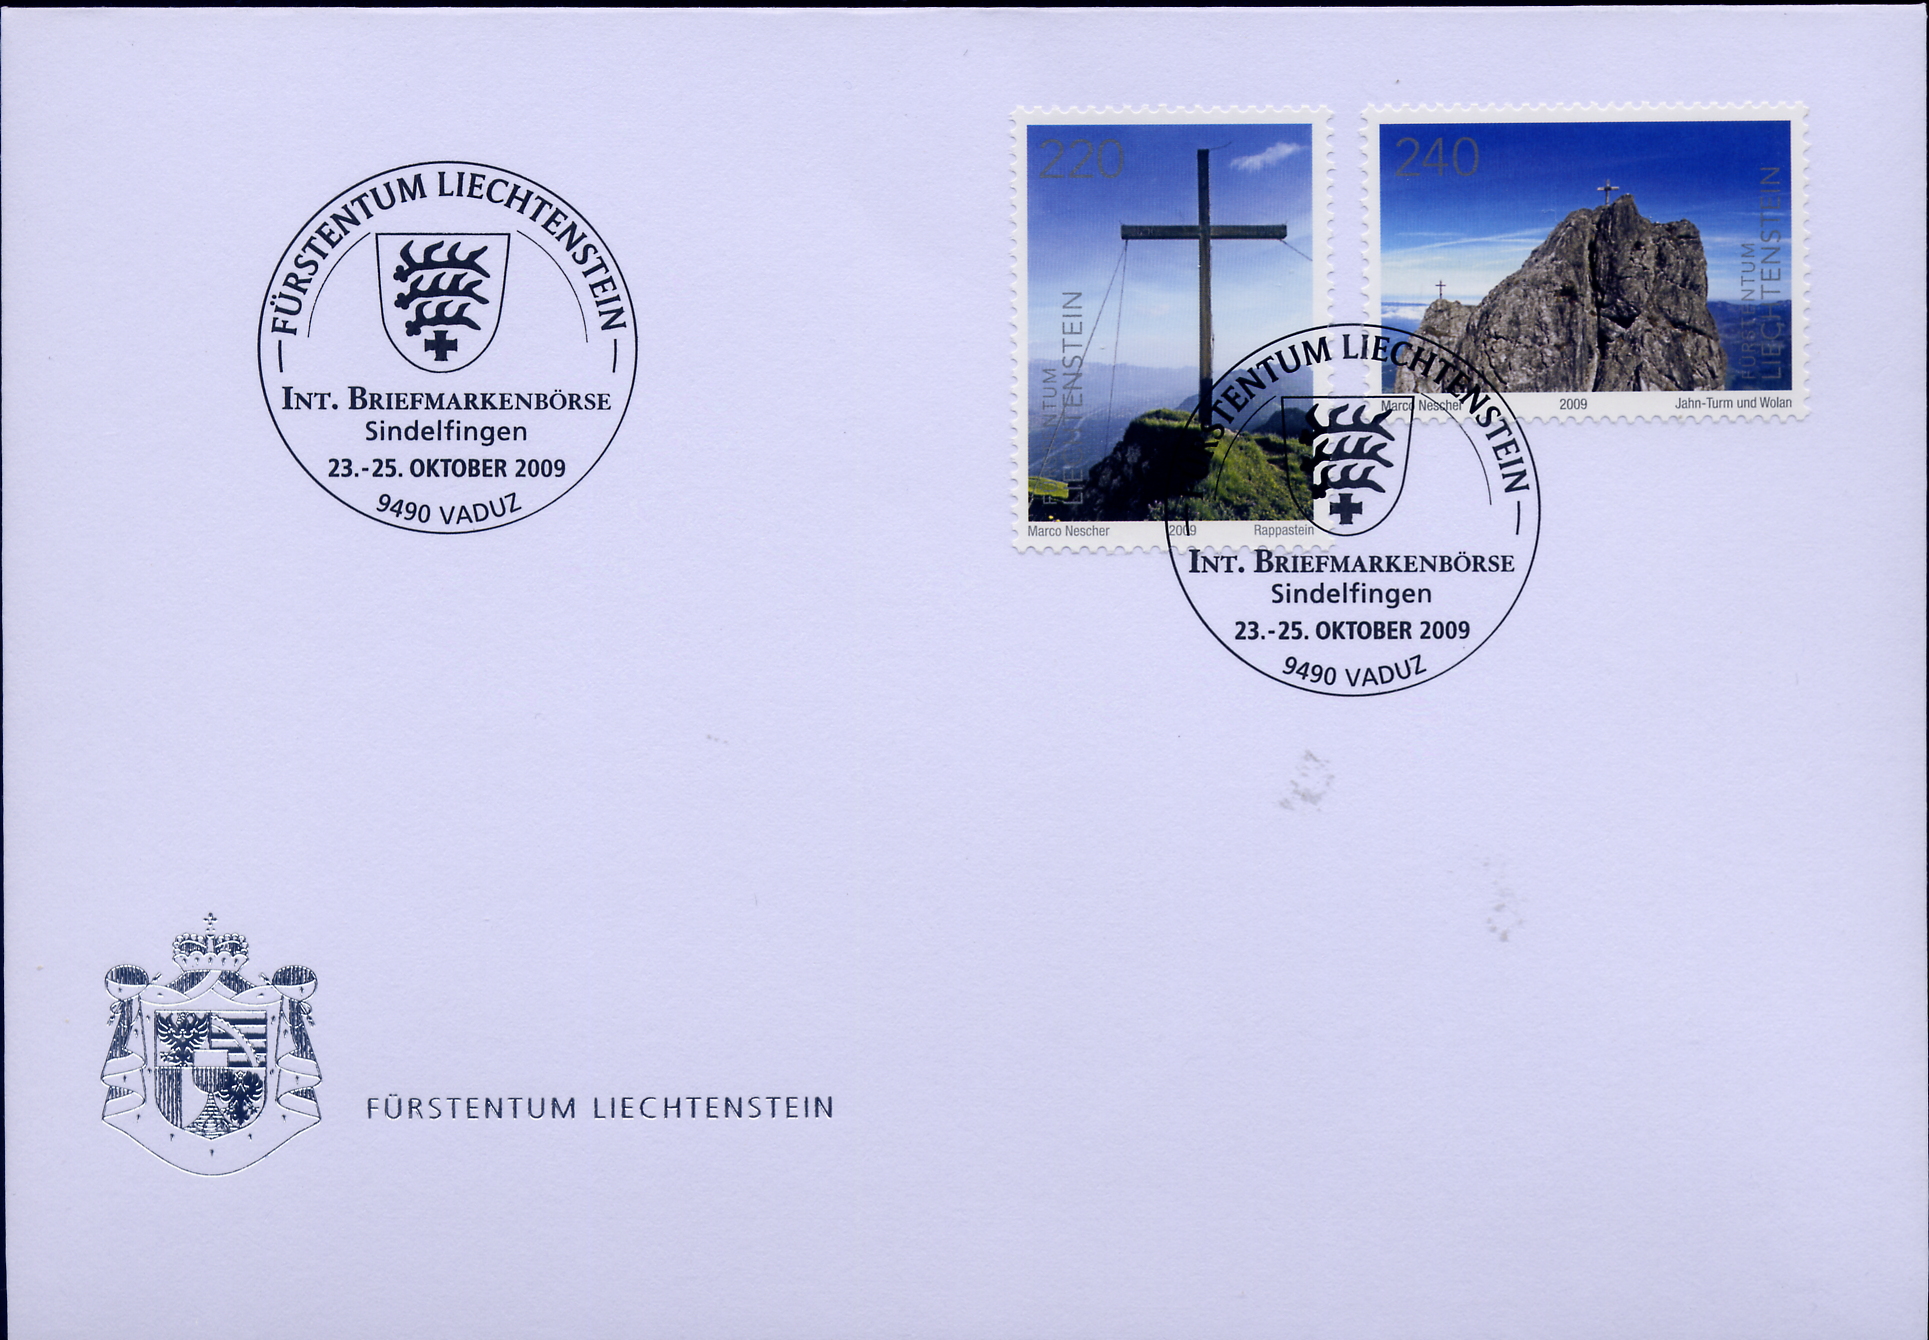 https://swiss-stamps.org/wp-content/uploads/2023/12/2009-10-Sindelfingen.jpg